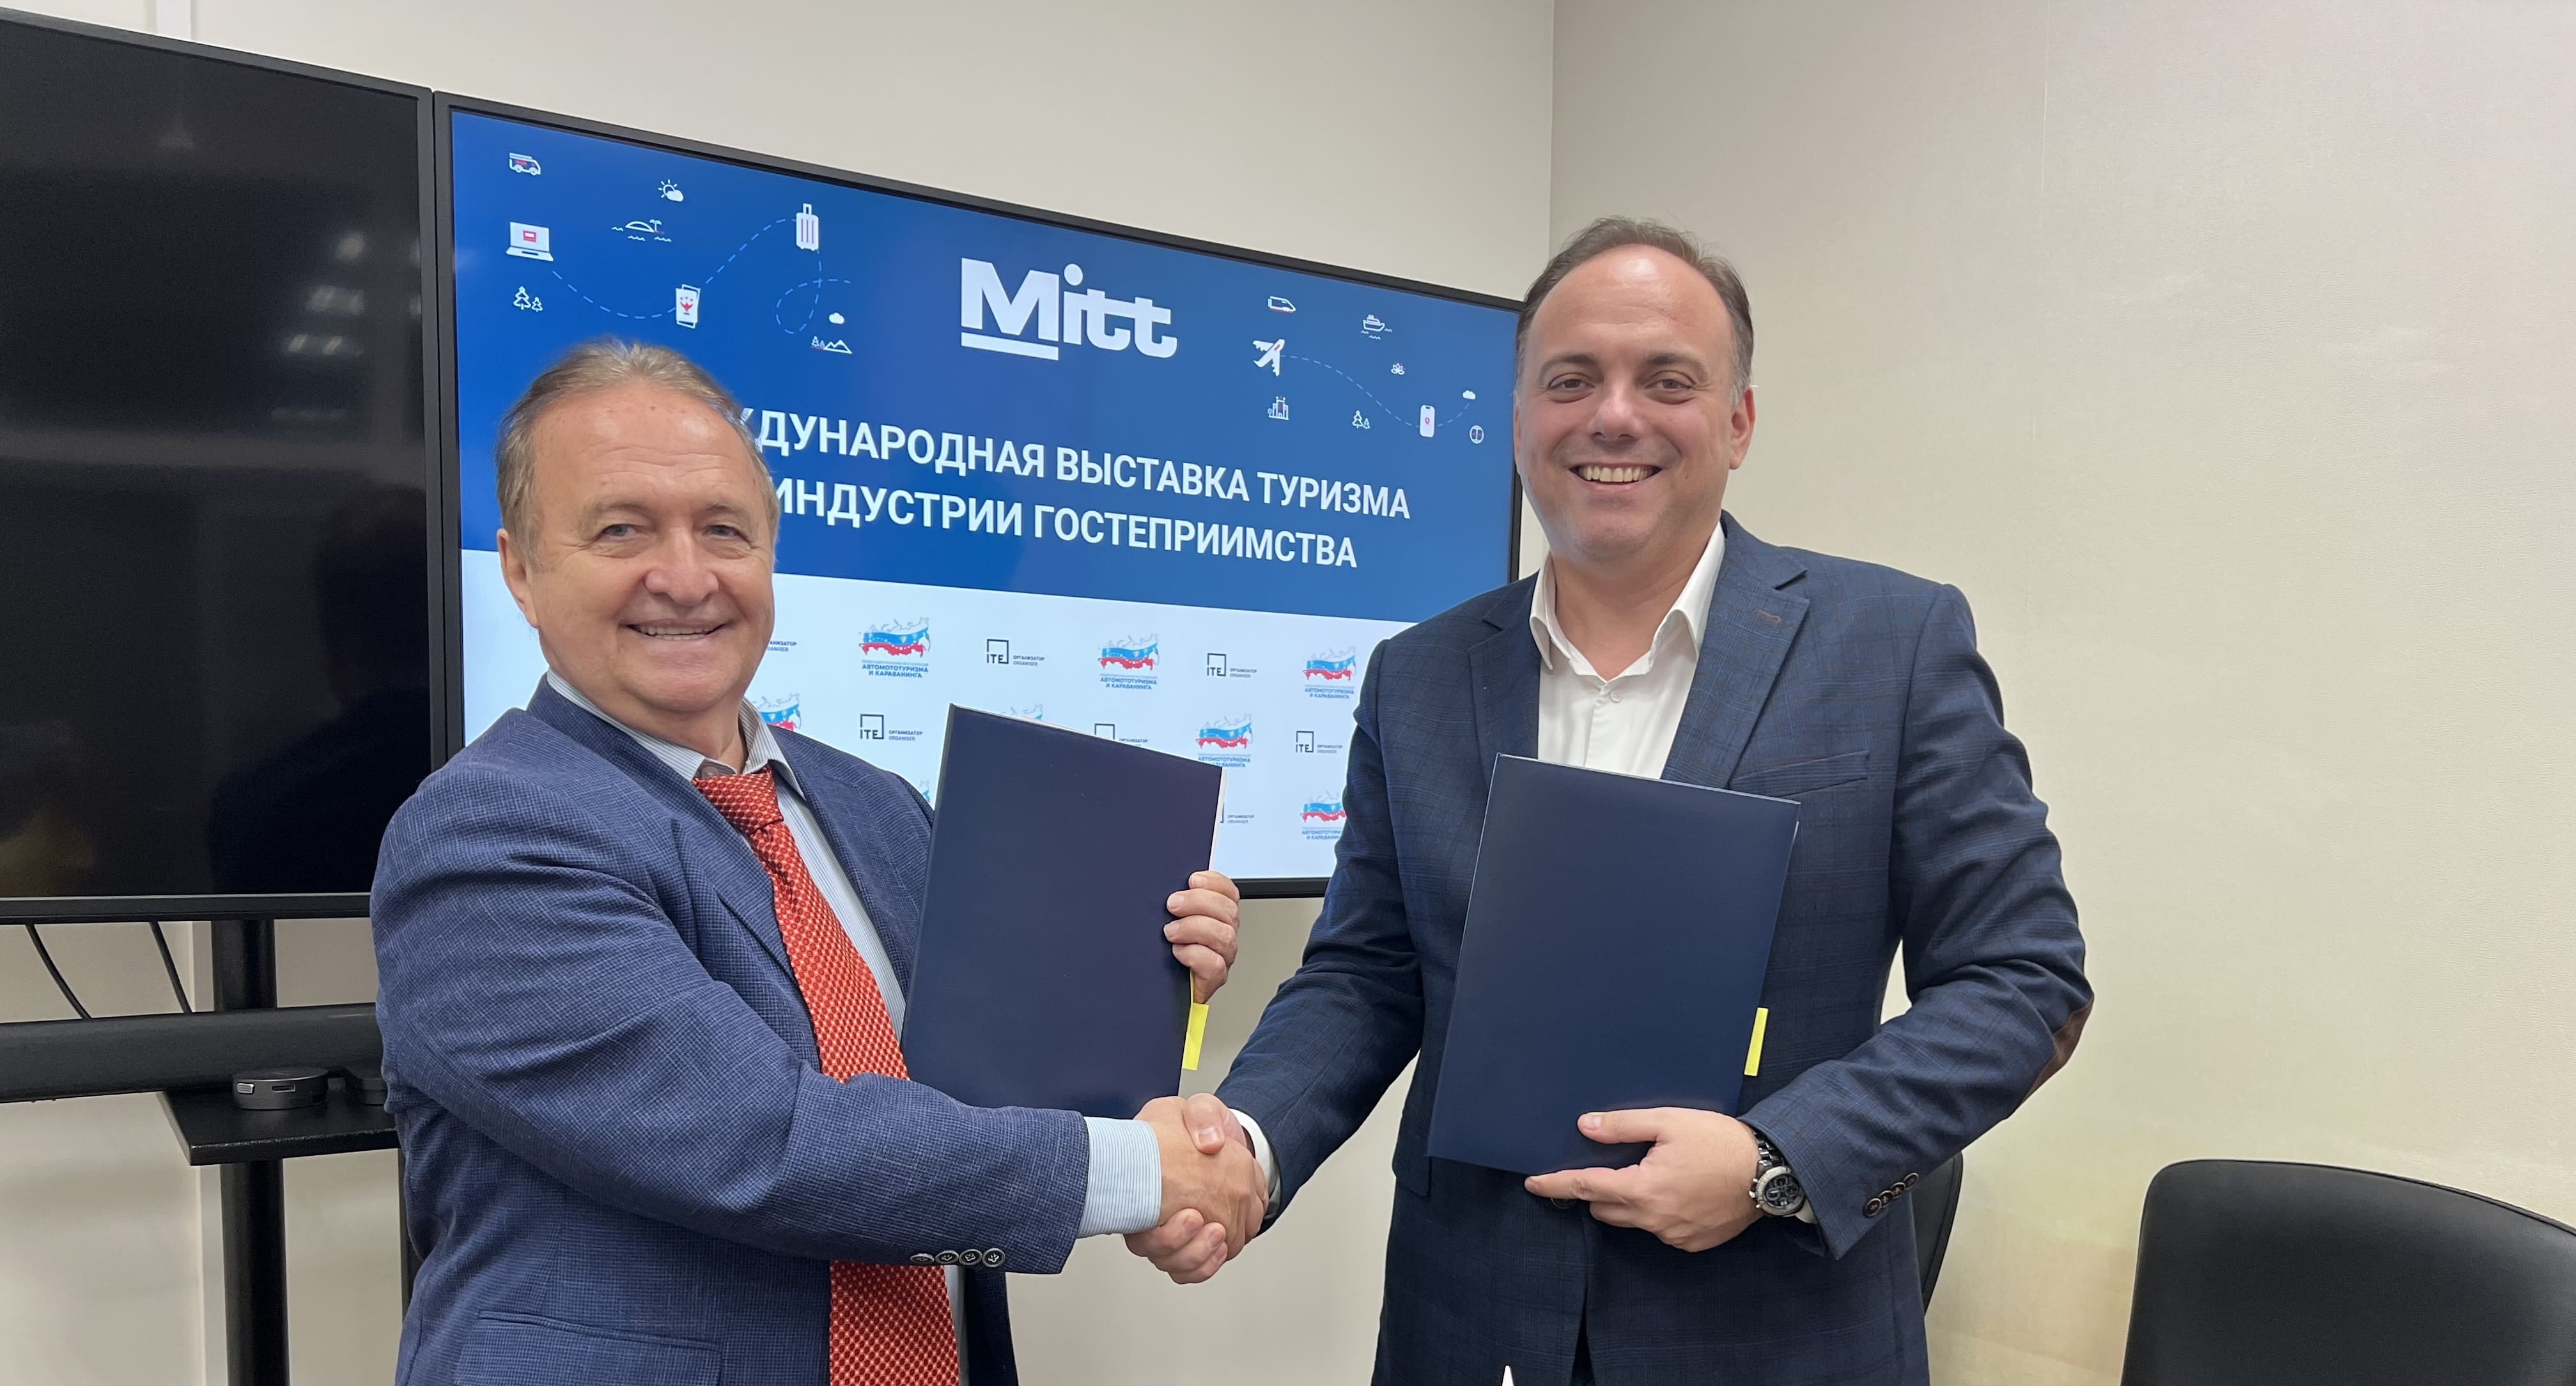 Подписано соглашение о сотрудничестве MITT и Общенациональной ассоциации Автомототуризма и караванинга